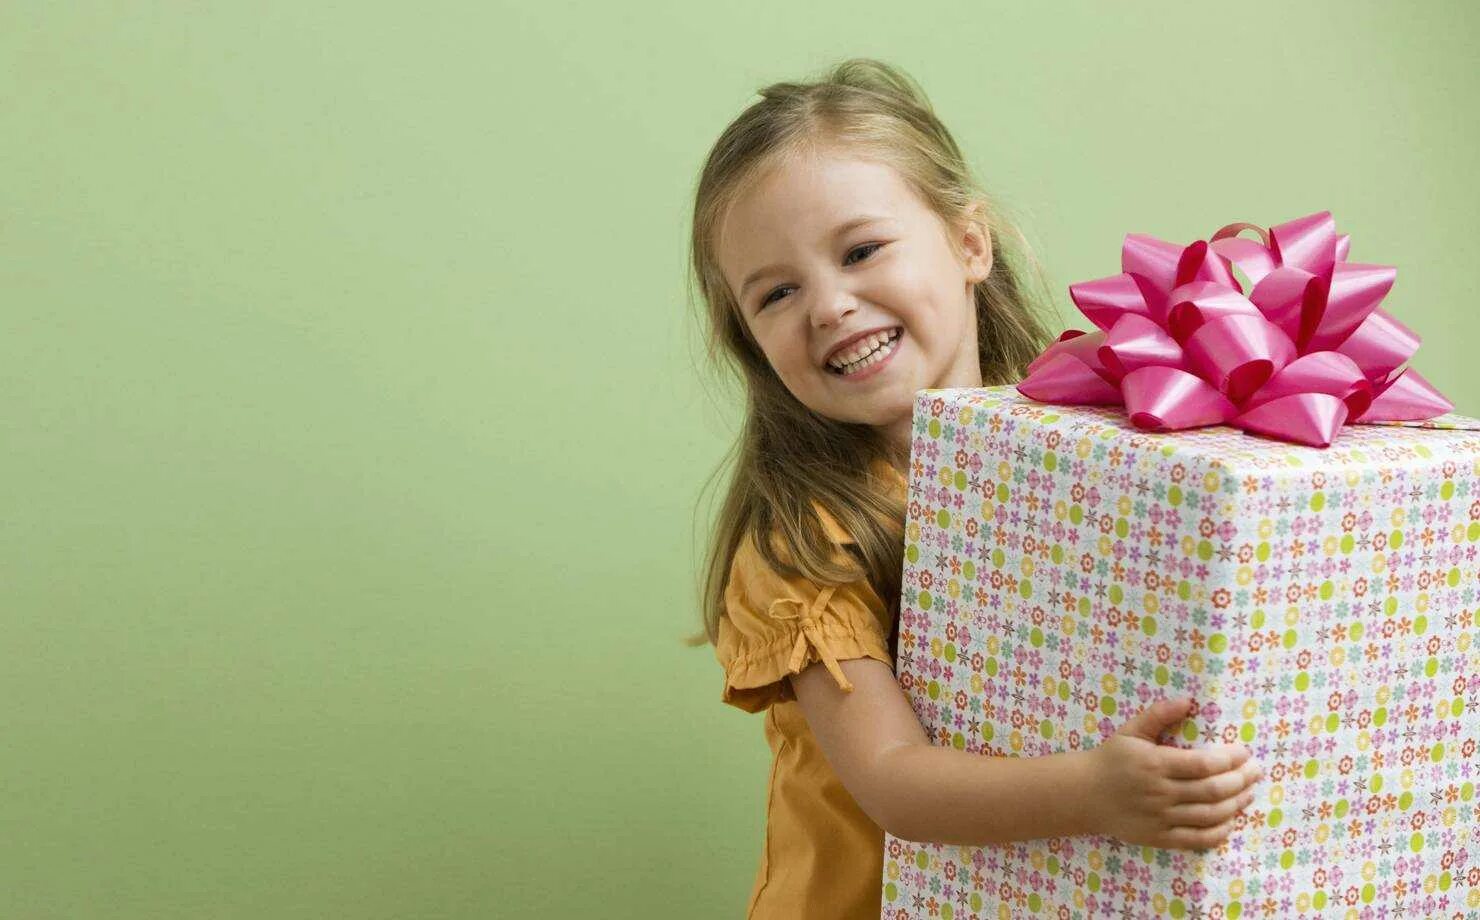 Подарки для детей. Подарок для девочки. Ребенок радуется подарку. Подарки на день рождения девочке. Ранний сюрприз